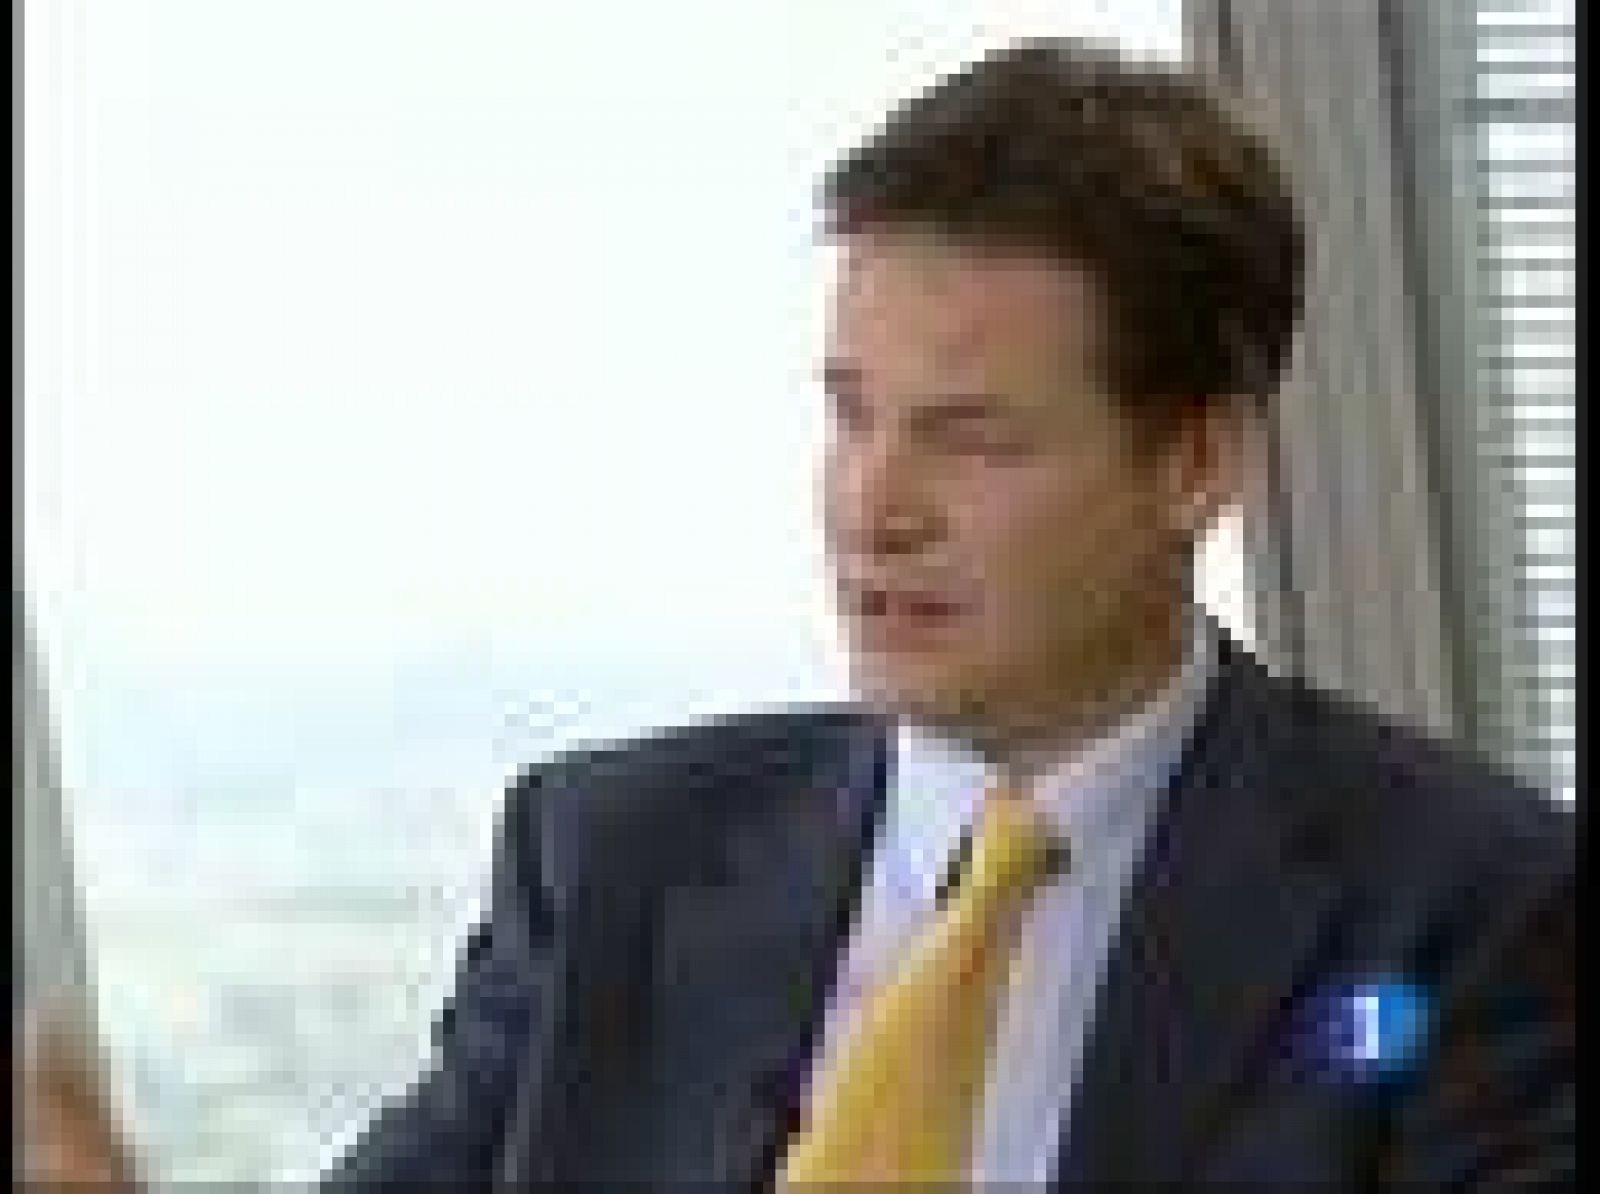  El viceprimer ministro británico, Nick Clegg, ha adelantado en una entrevista en Los Desayunos de TVE, algunas de las medidas del plan de ajuste económico que su Gobierno presentará el próximo 22 de junio. 